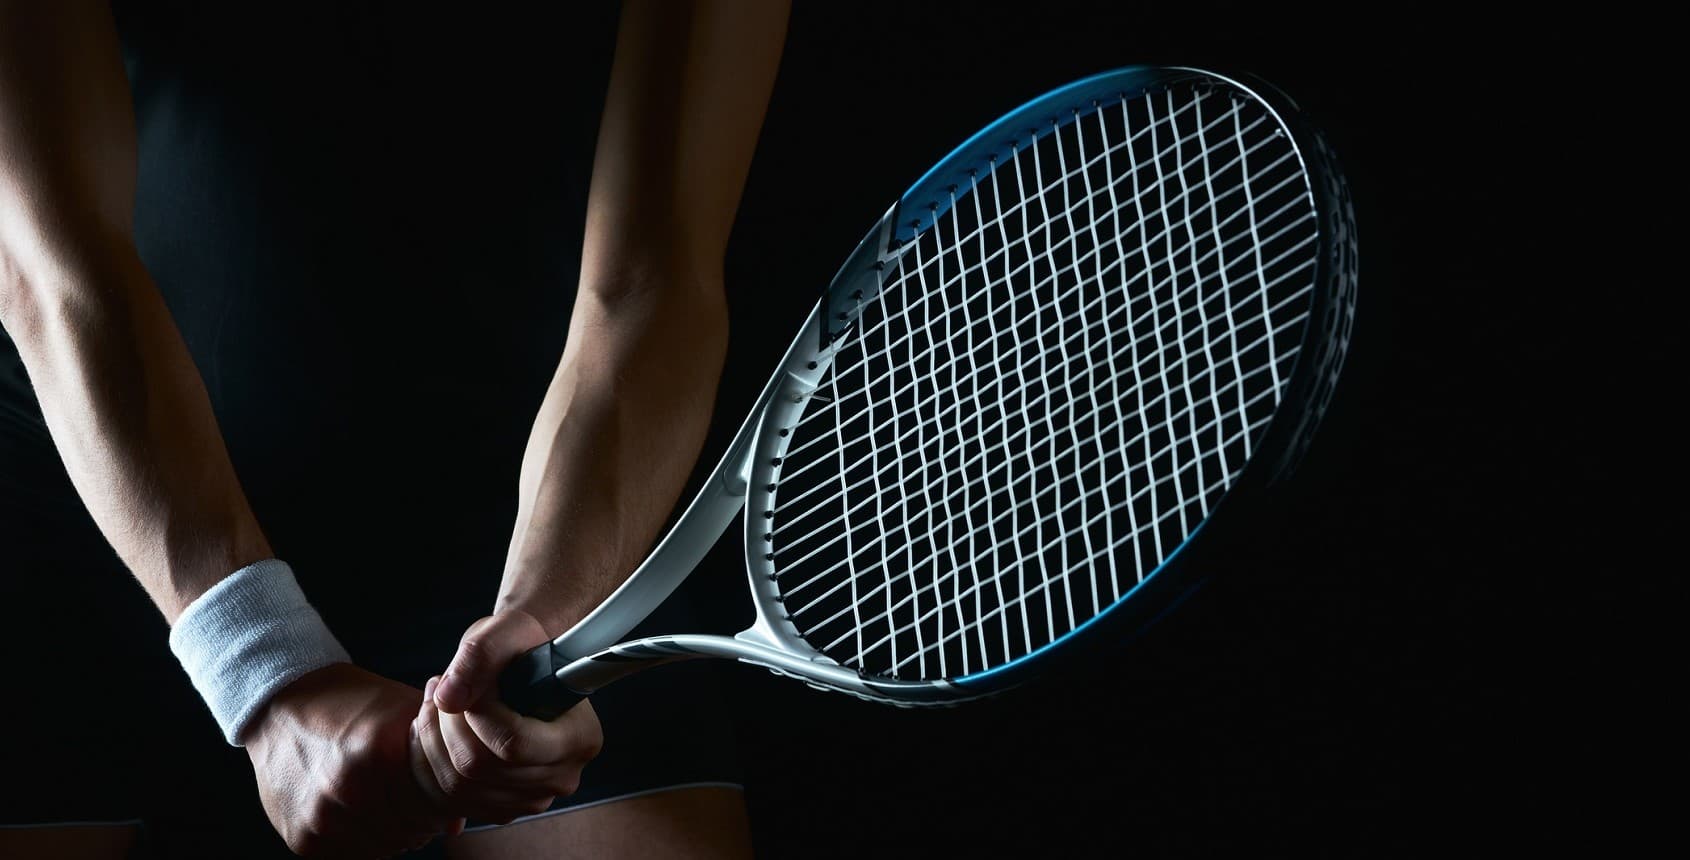 Adición Gastos de envío oro Raquetas de tenis: ofertas hasta -75%* | Privé by Zalando